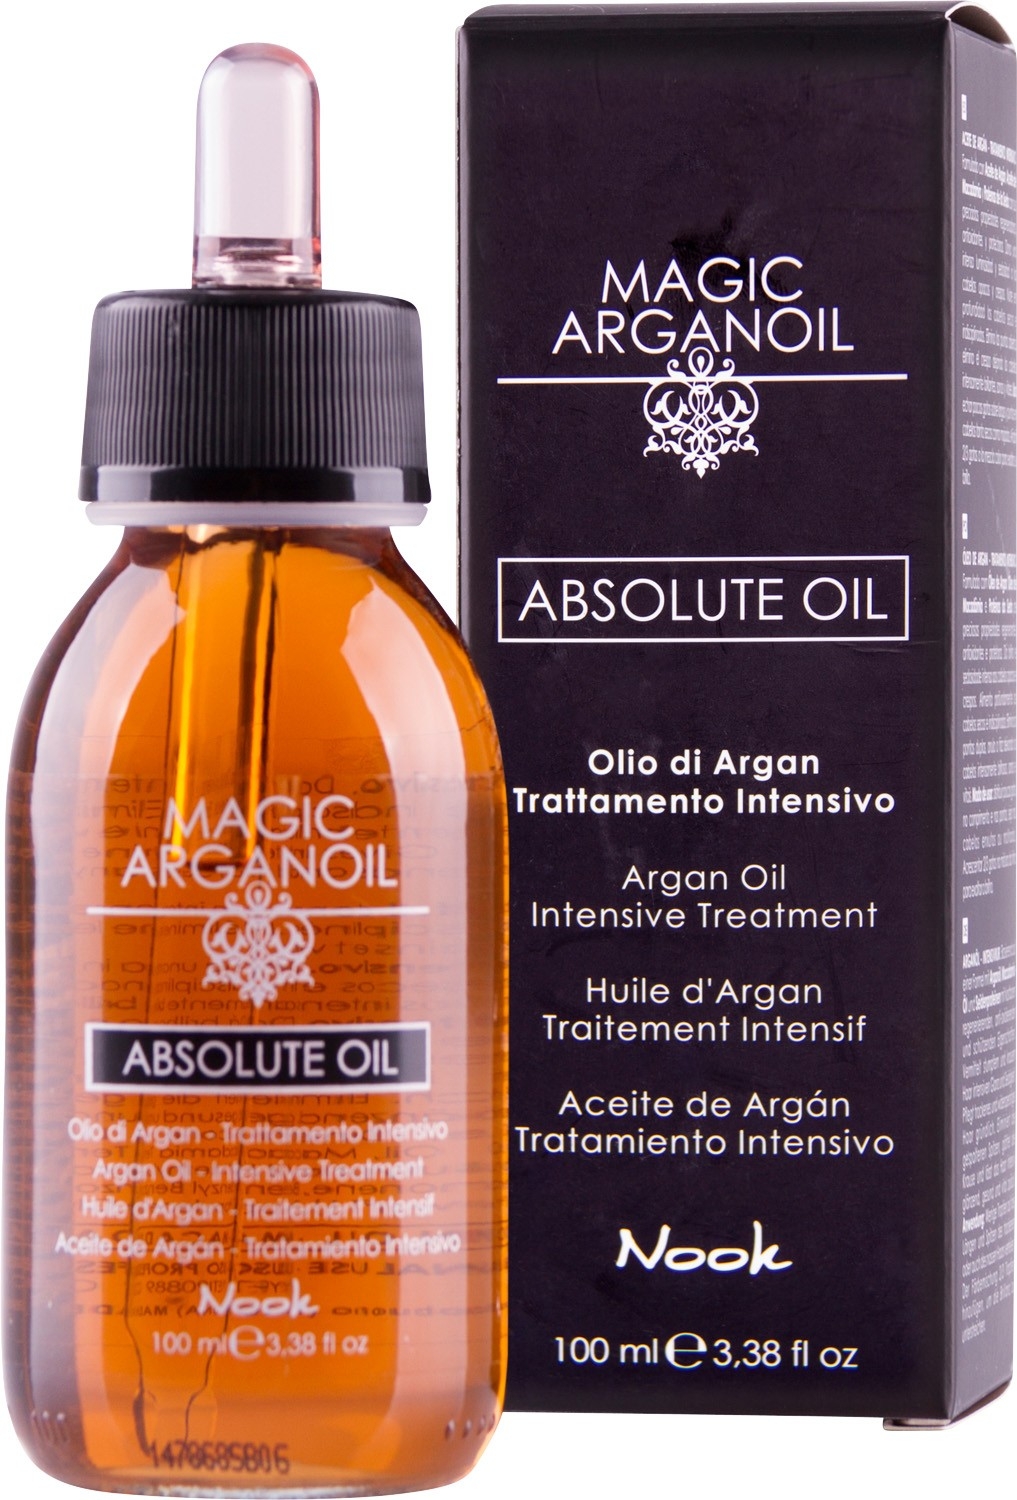 Tratament cu ulei de argan nook magic argan oil absolute oil intensive 100 ml